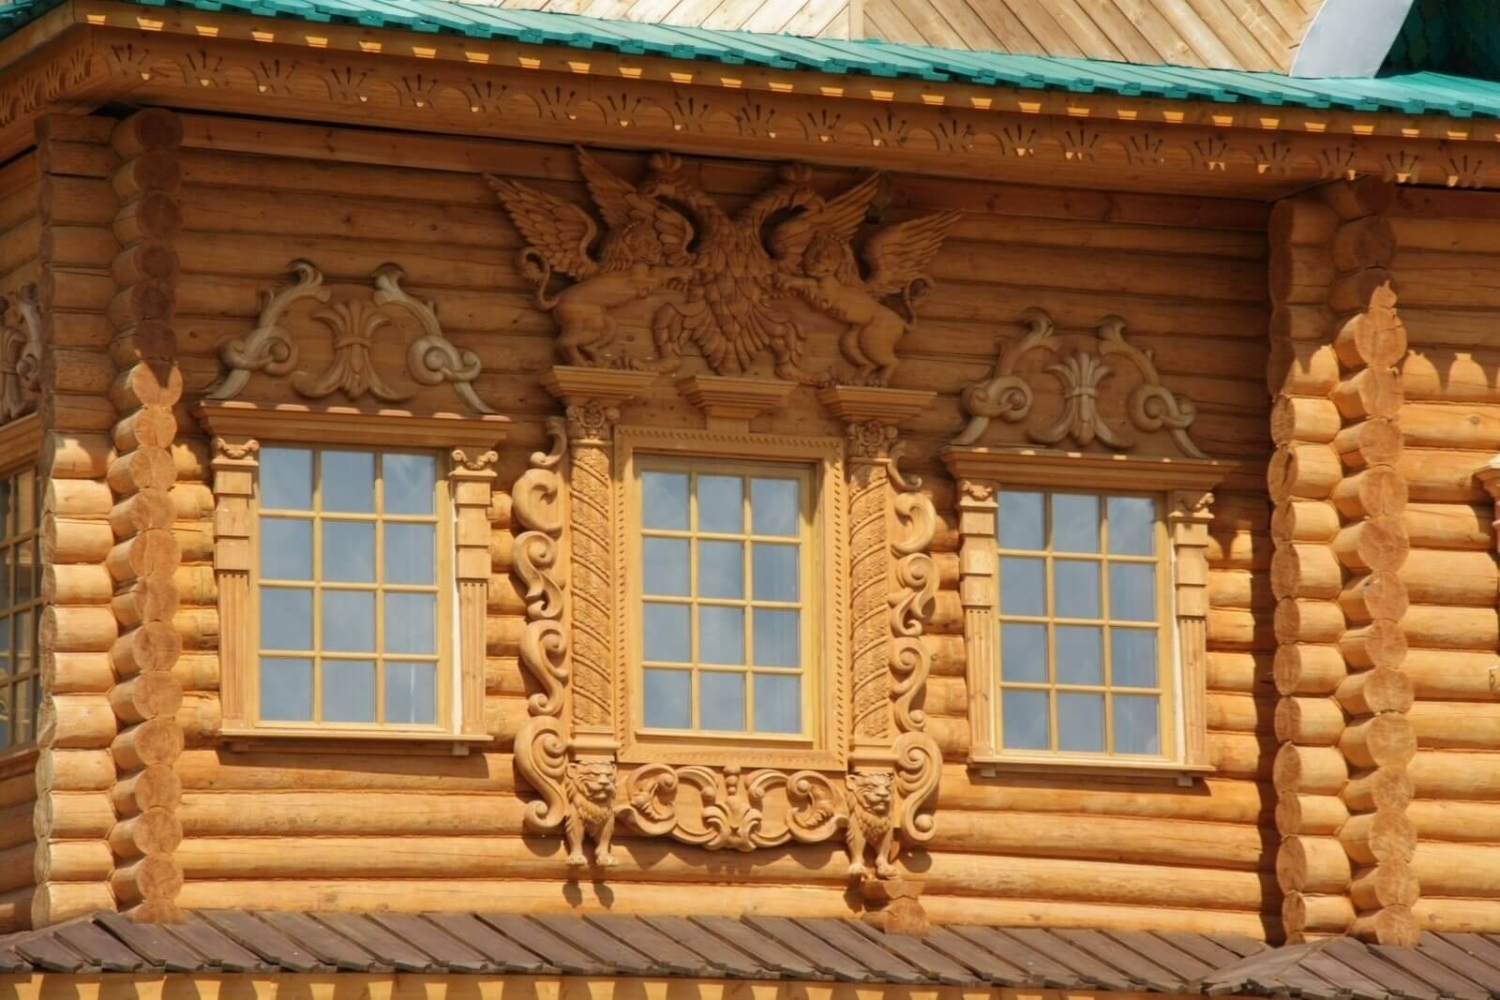 Дом в русском стиле: особенности оформления и отделки